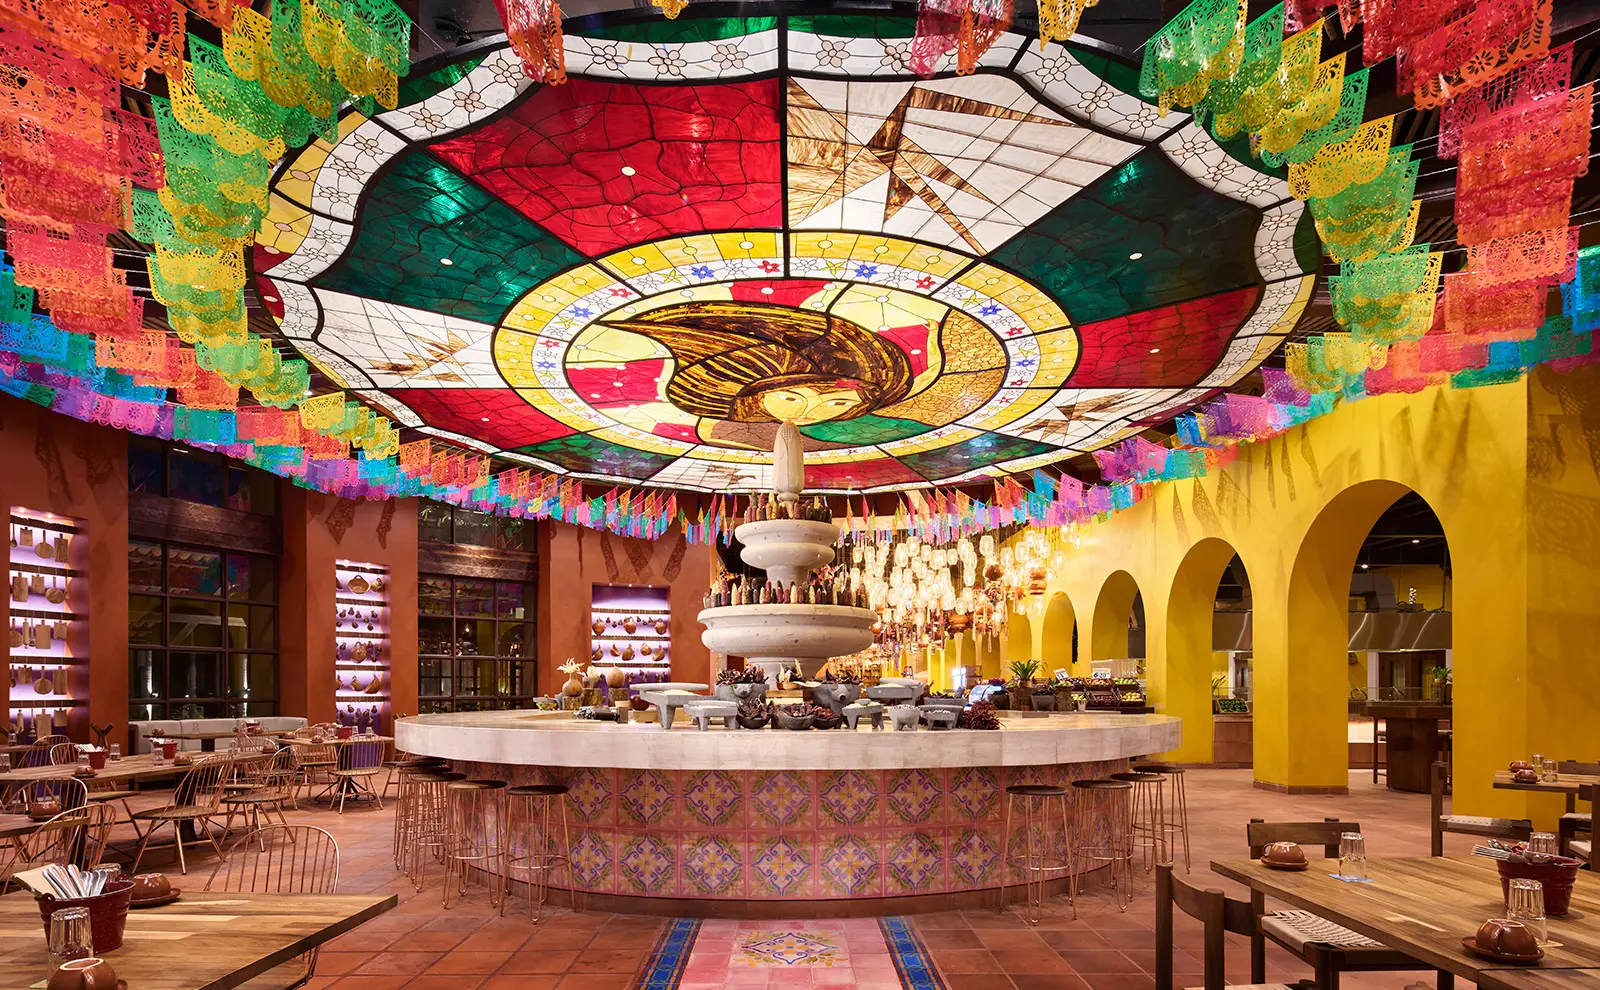 Mercado De San Juan Restaurant at Hotel Xcarte Arte in Riviera Maya, Mexico